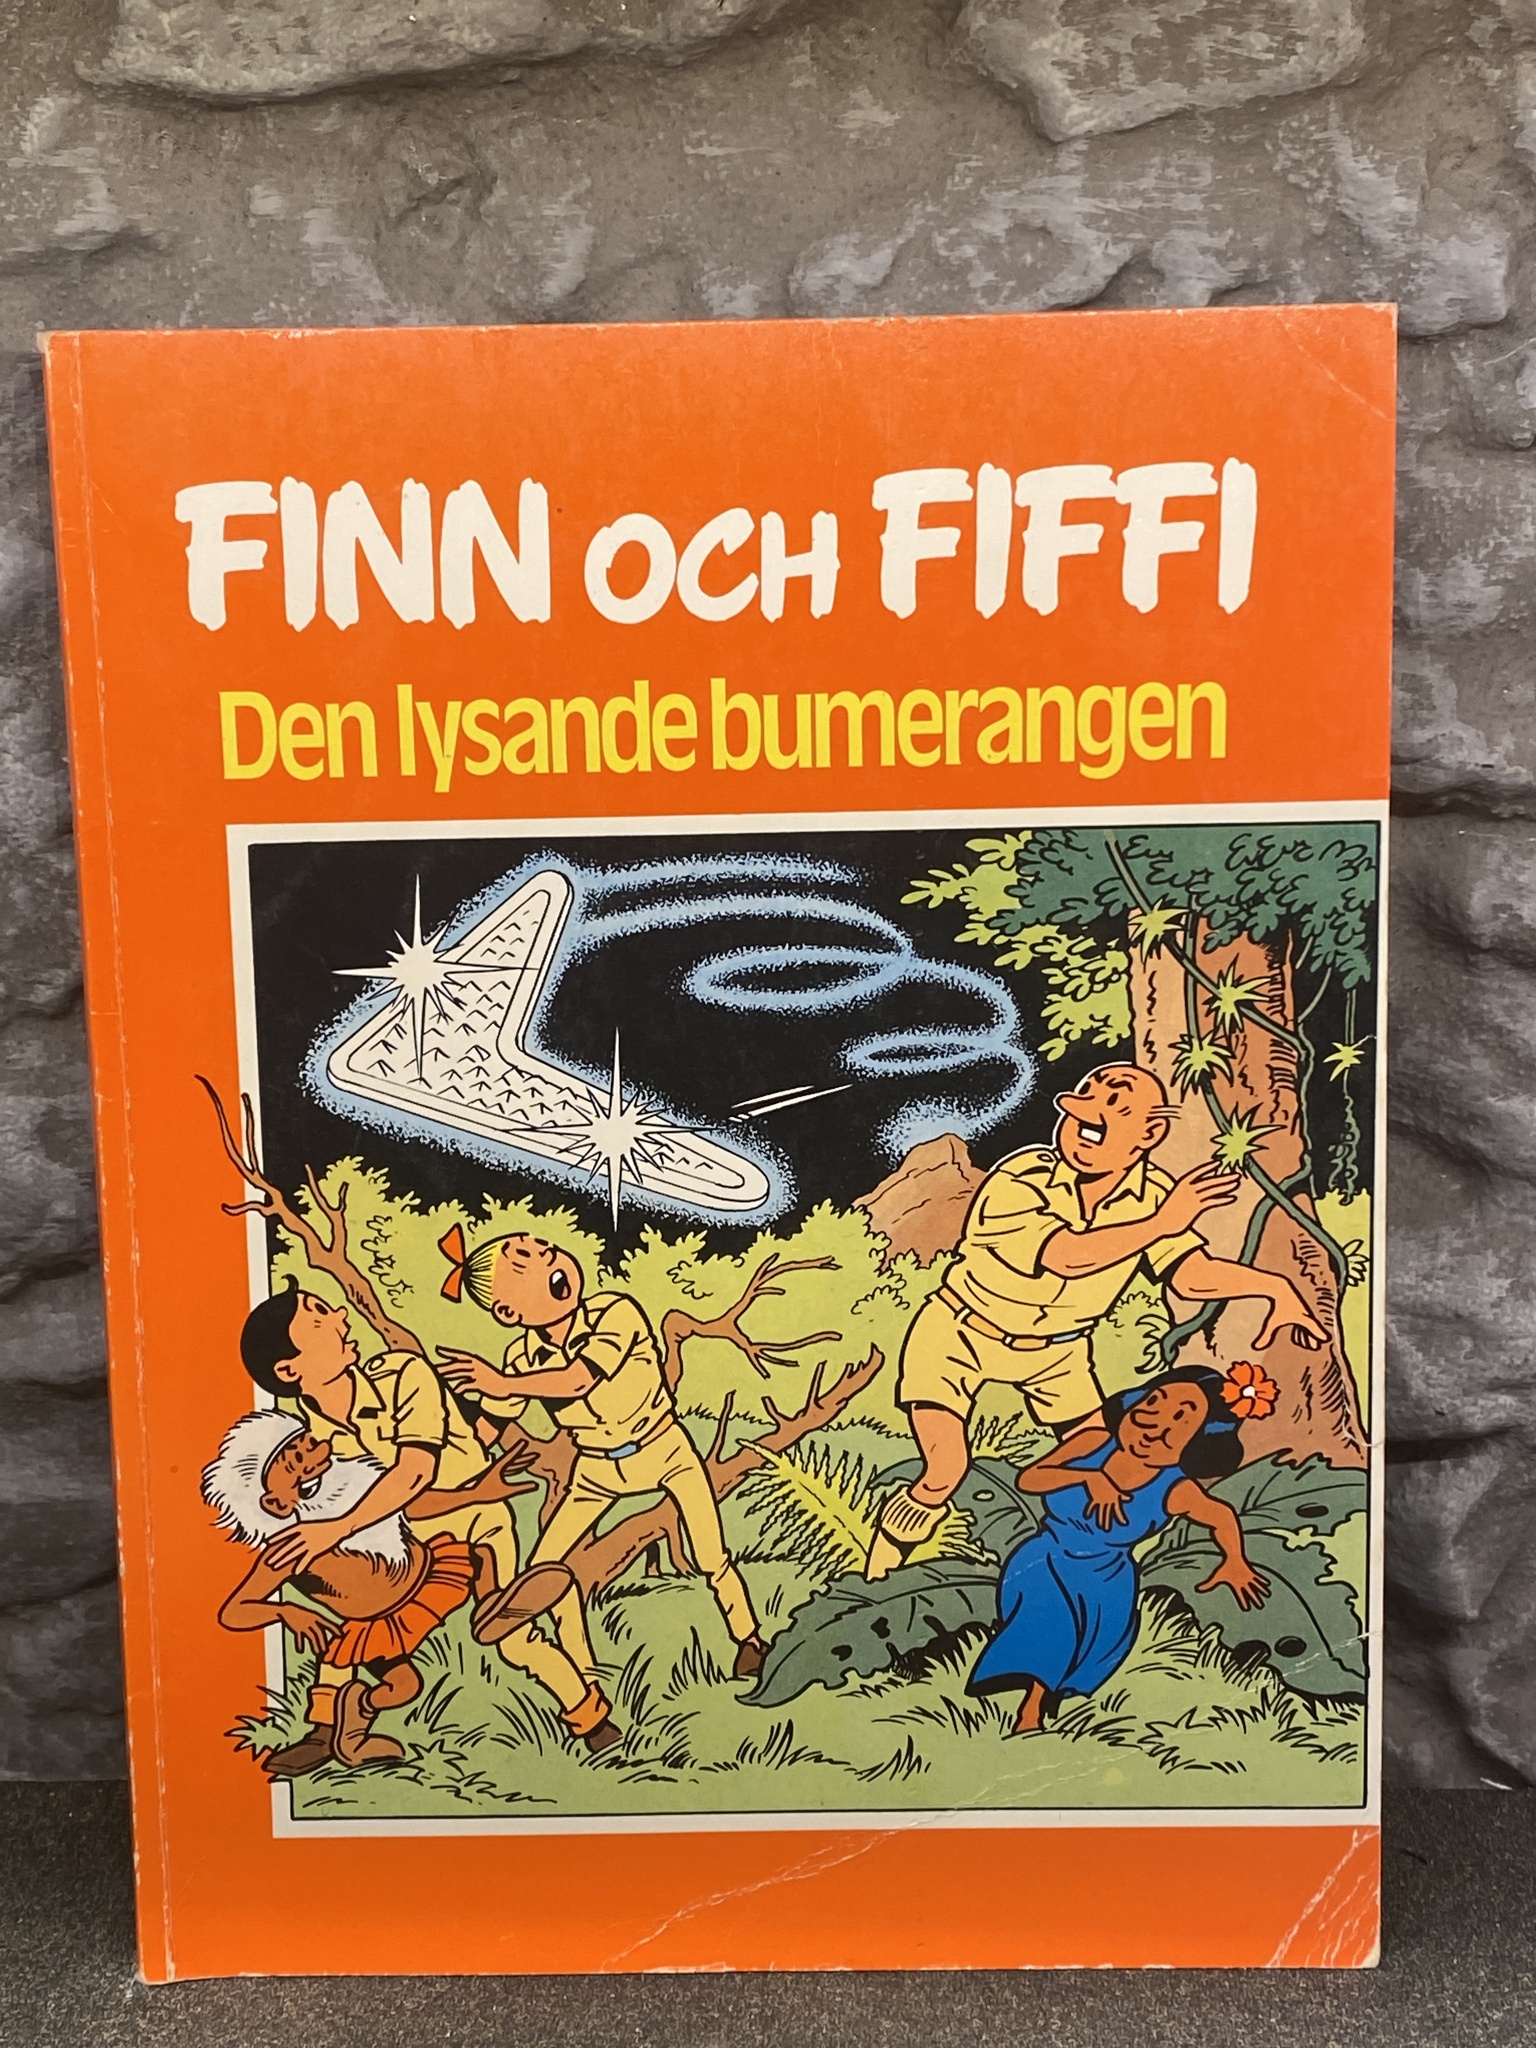 Seriealbum Finn och Fiffi: Den lysande bumerangen av Willy Wandersteen